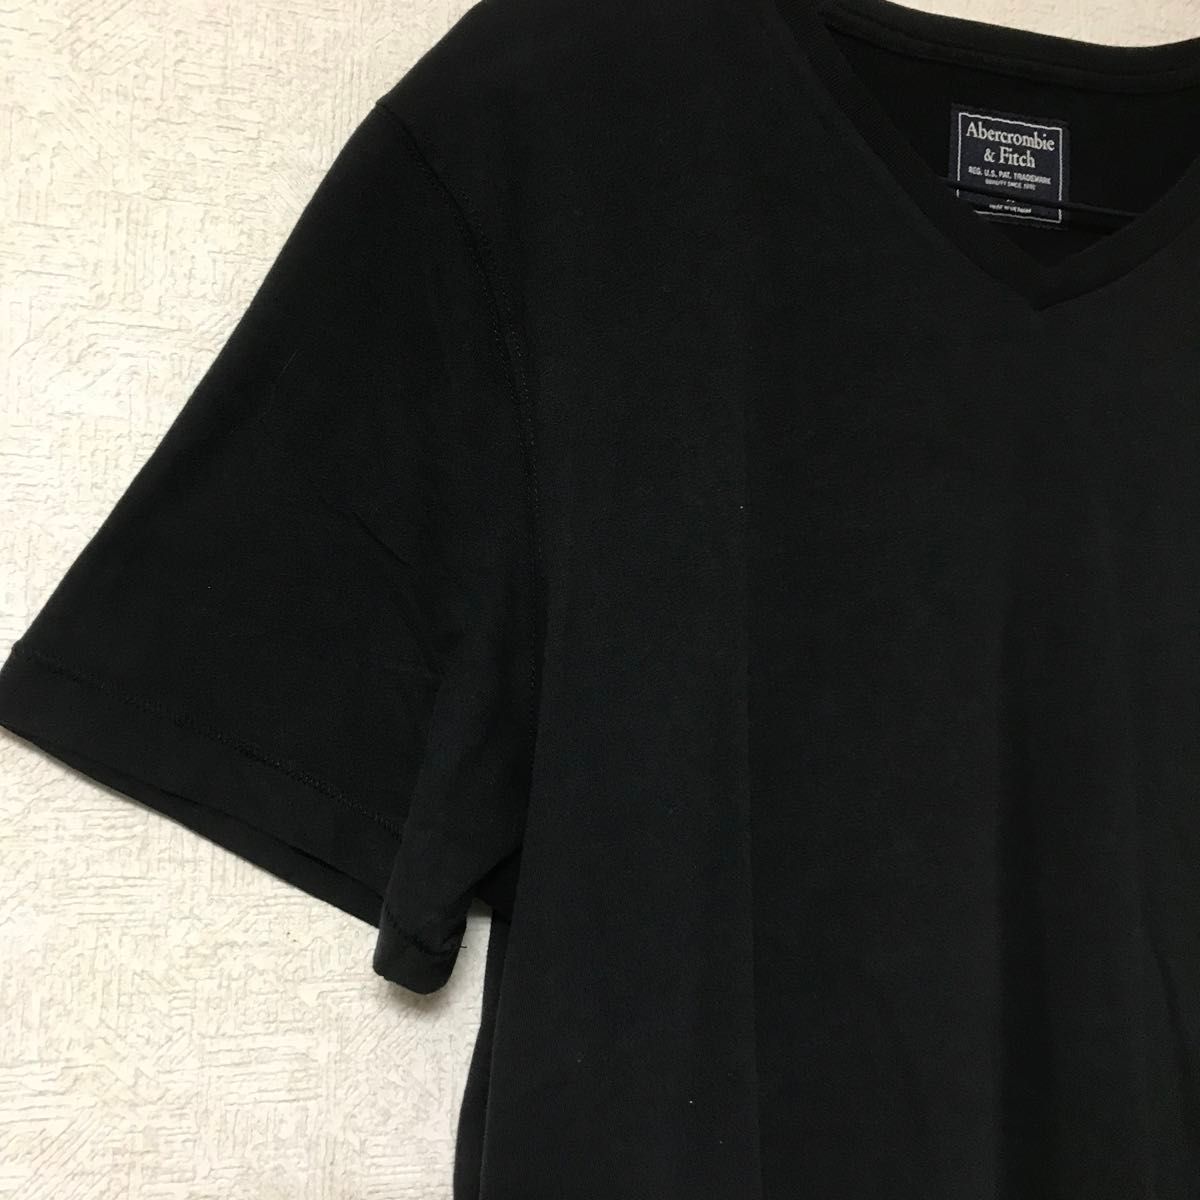 【Abarcrombie&Fitch】 半袖Tシャツ 黒 ワンポイント 刺繍ロゴ Vネック M ユニセックス